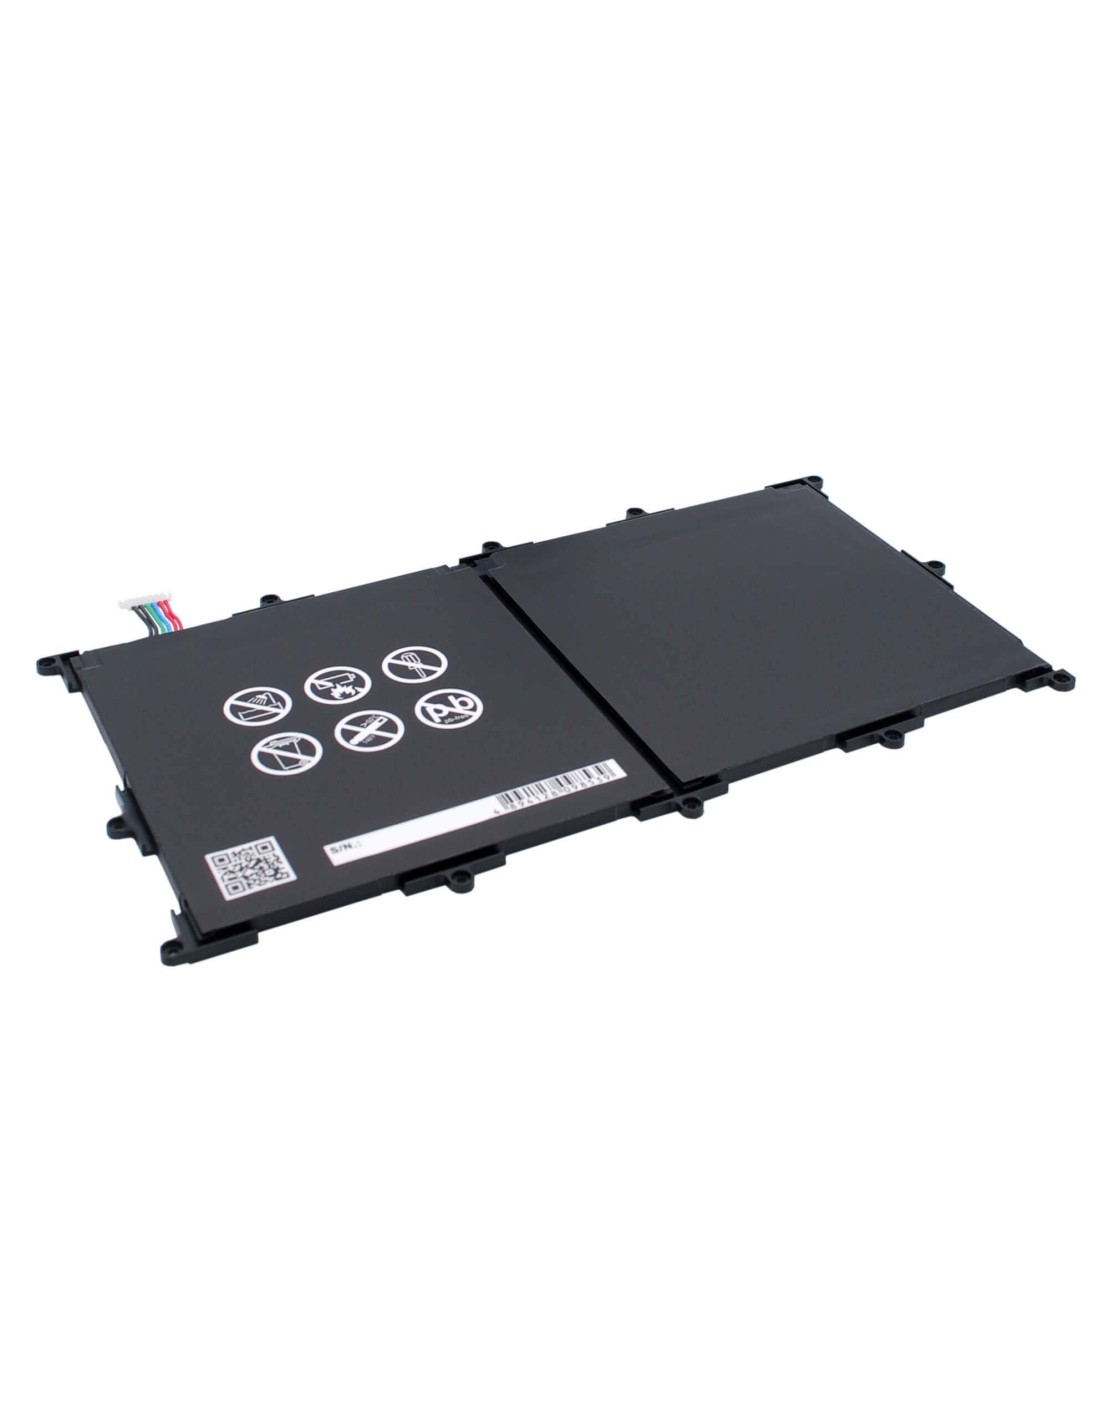 Battery for Lg G Pad Tablet 10.1 Inch, V700, Vk700 3.8V, 8000mAh - 30.40Wh